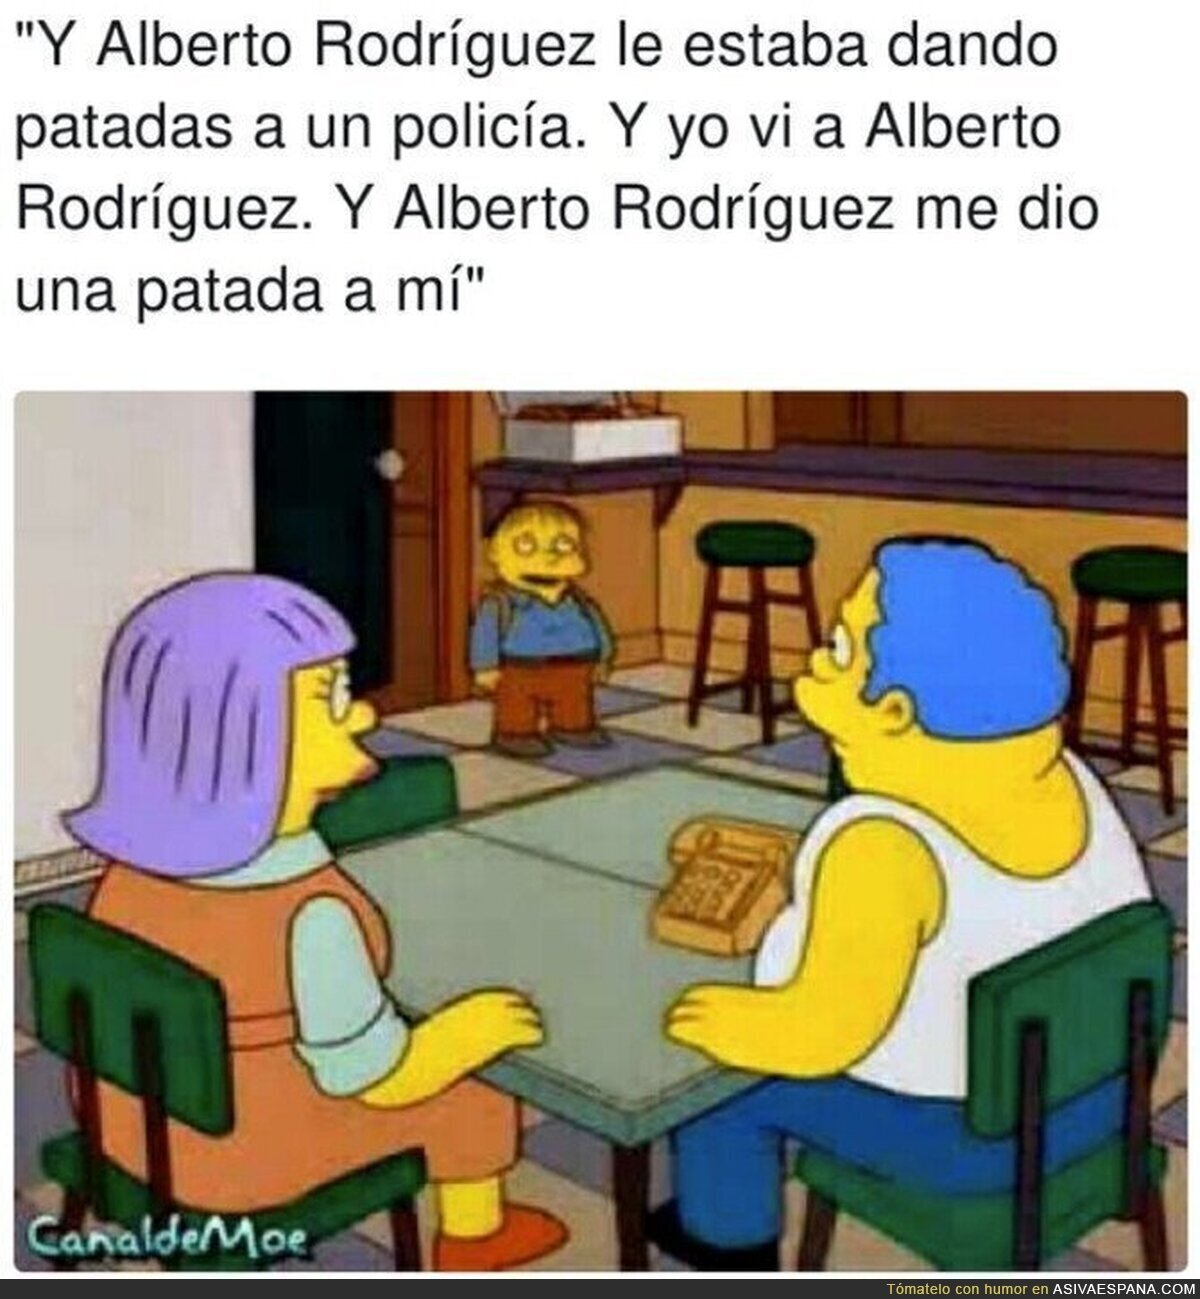 No hay más pruebas contra Alberto Rodríguez